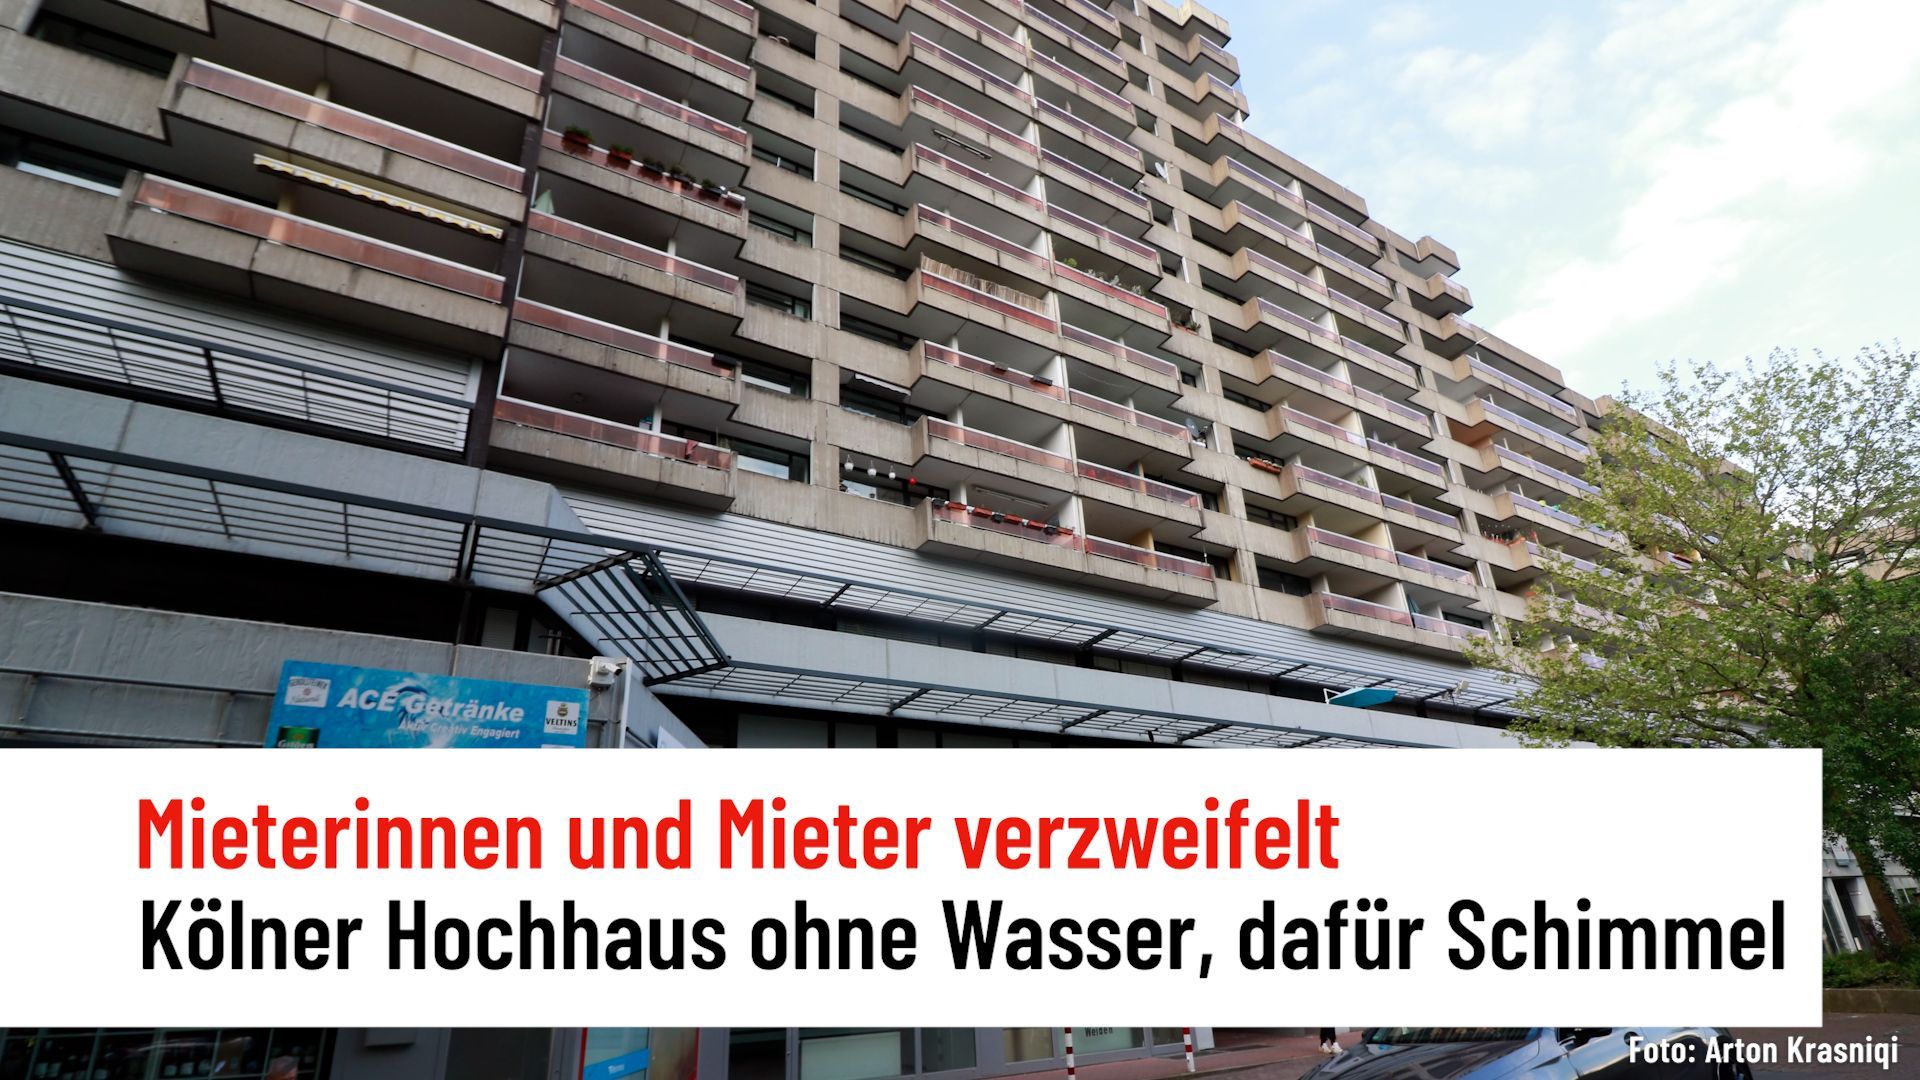 Kein Wasser, dafür Schimmel: Mieterinnen und Mieter eines Kölner Hochhauses verzweifelt